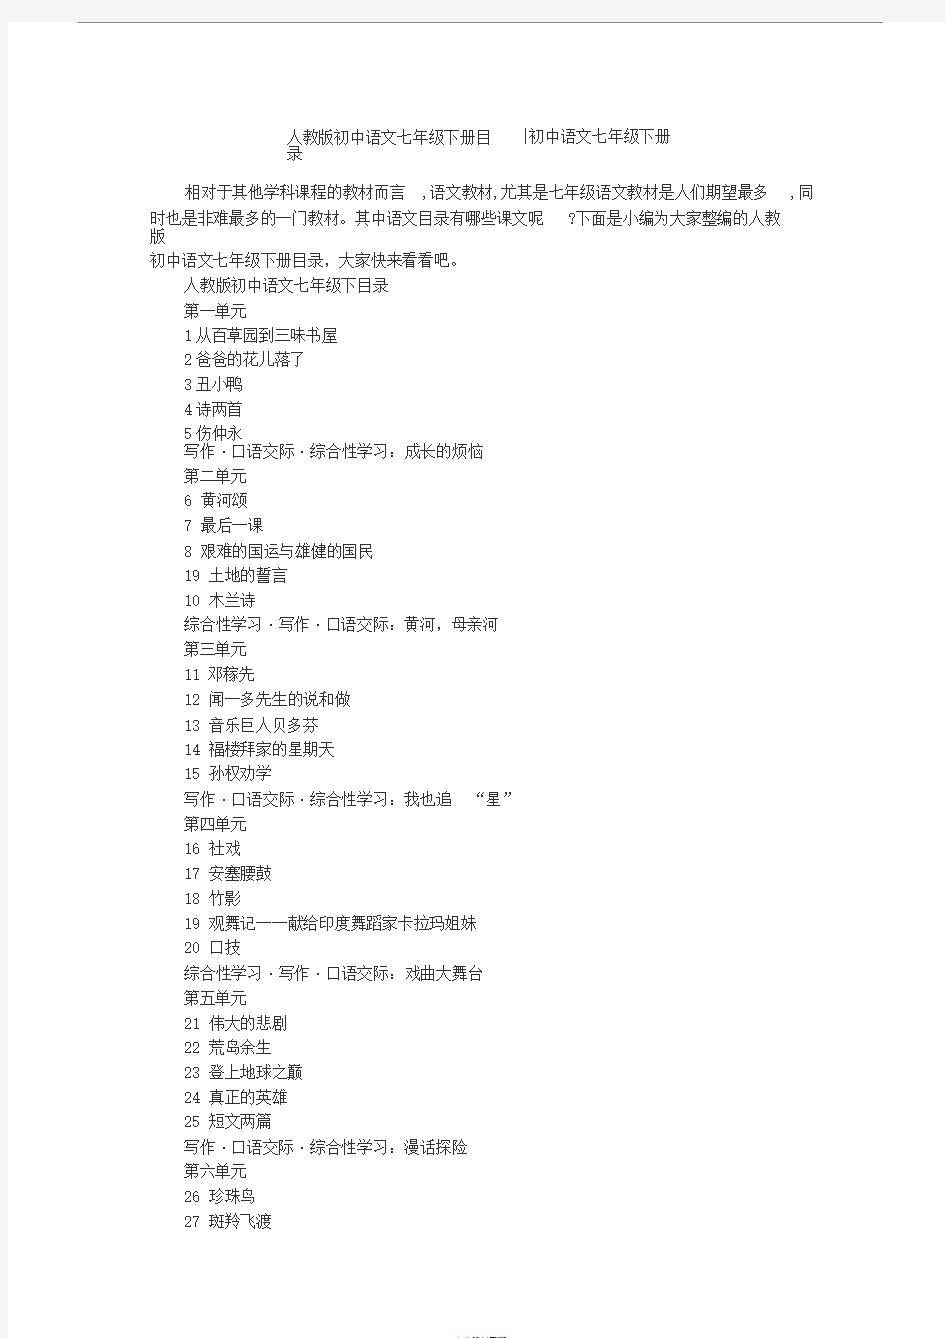 人教版初中语文七年级下册目录-初中语文七年级下册